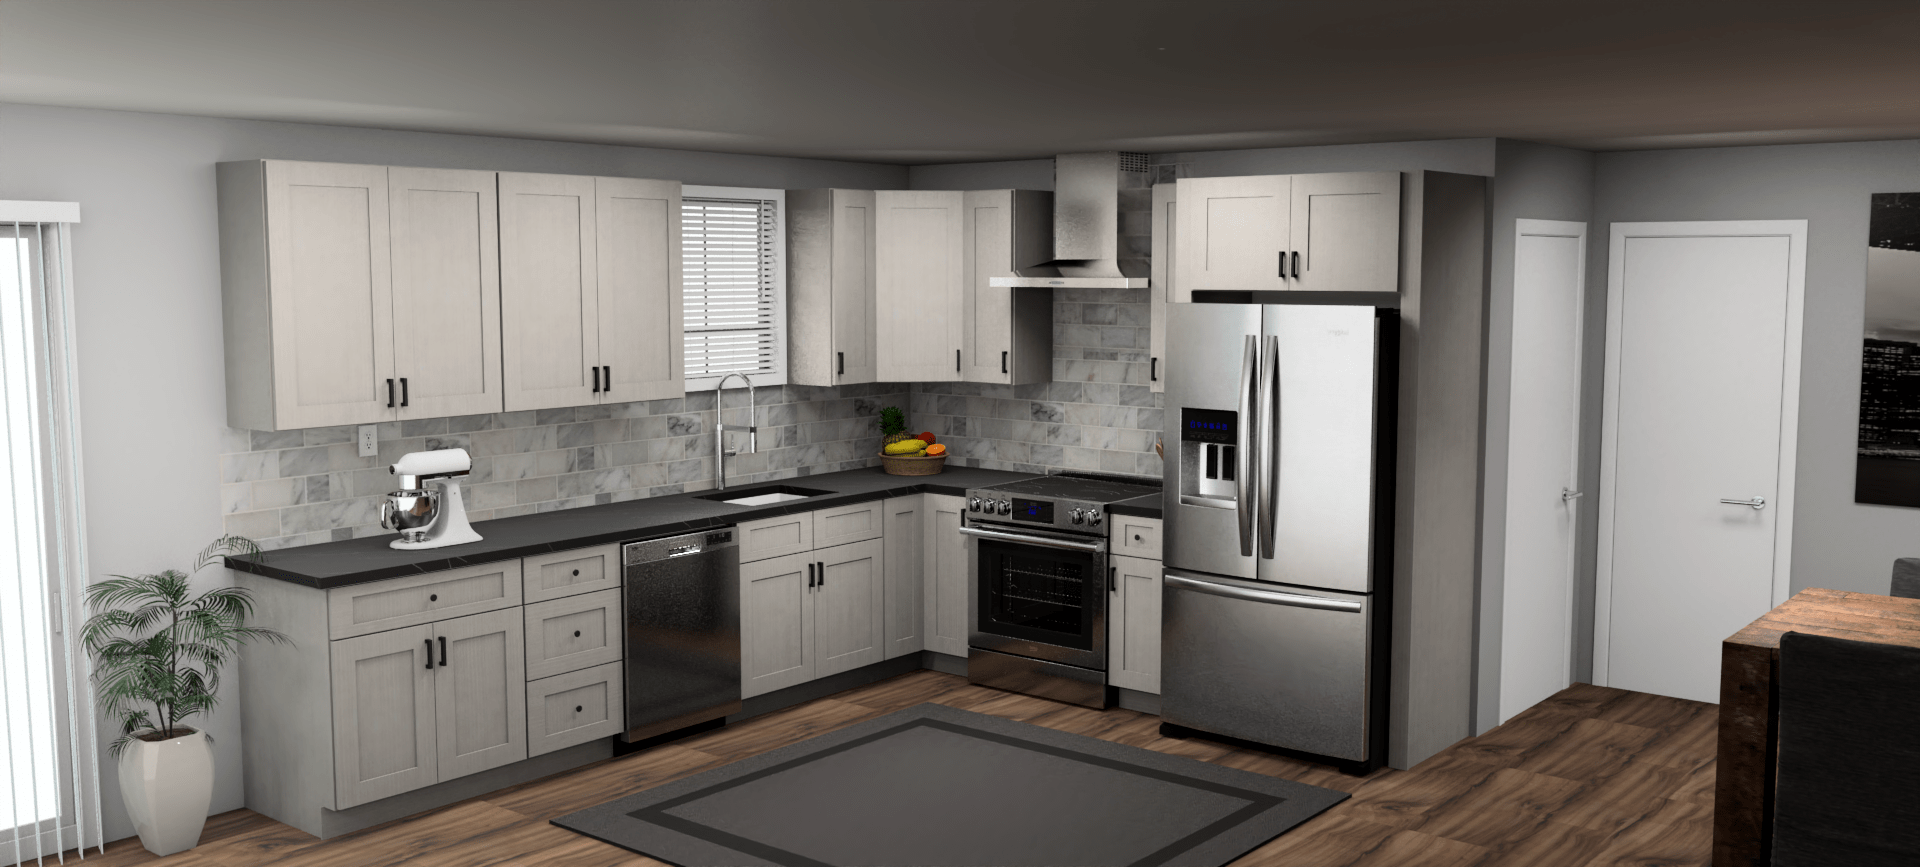 Fabuwood Allure Galaxy Horizon 12 x 10 L Shaped Kitchen Main Layout Photo